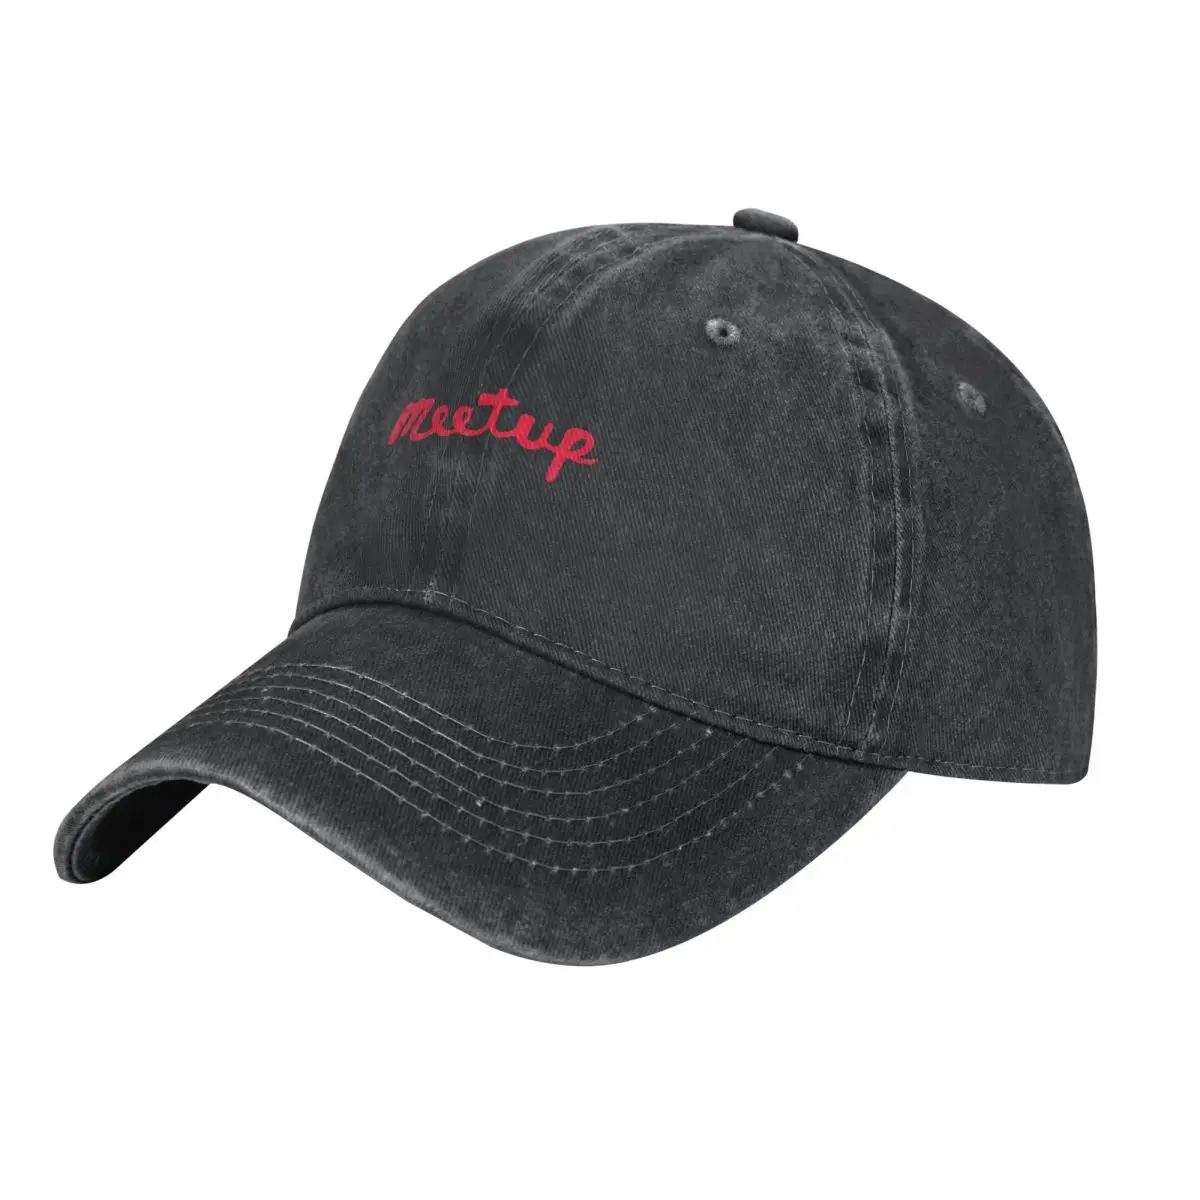 

Best Seller - Meetup Logo Merchandise Essential T-Shirt Cowboy Hat Military Tactical Cap Ball Cap Women's Beach Outlet Men's